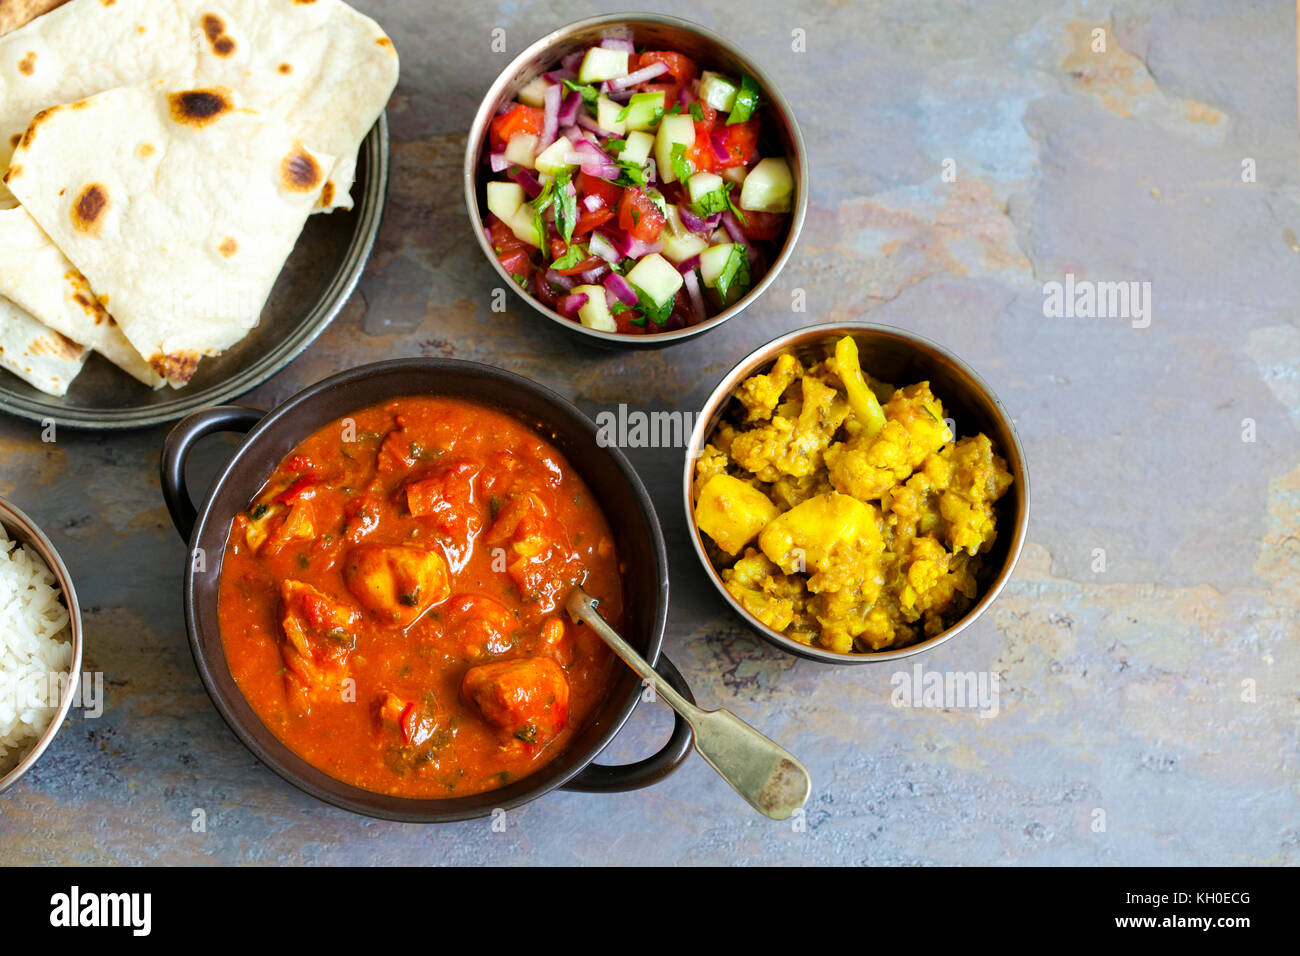 Repas indien avec du poulet tikka masala, Aloo Gobi, salade, riz et pain plat Banque D'Images